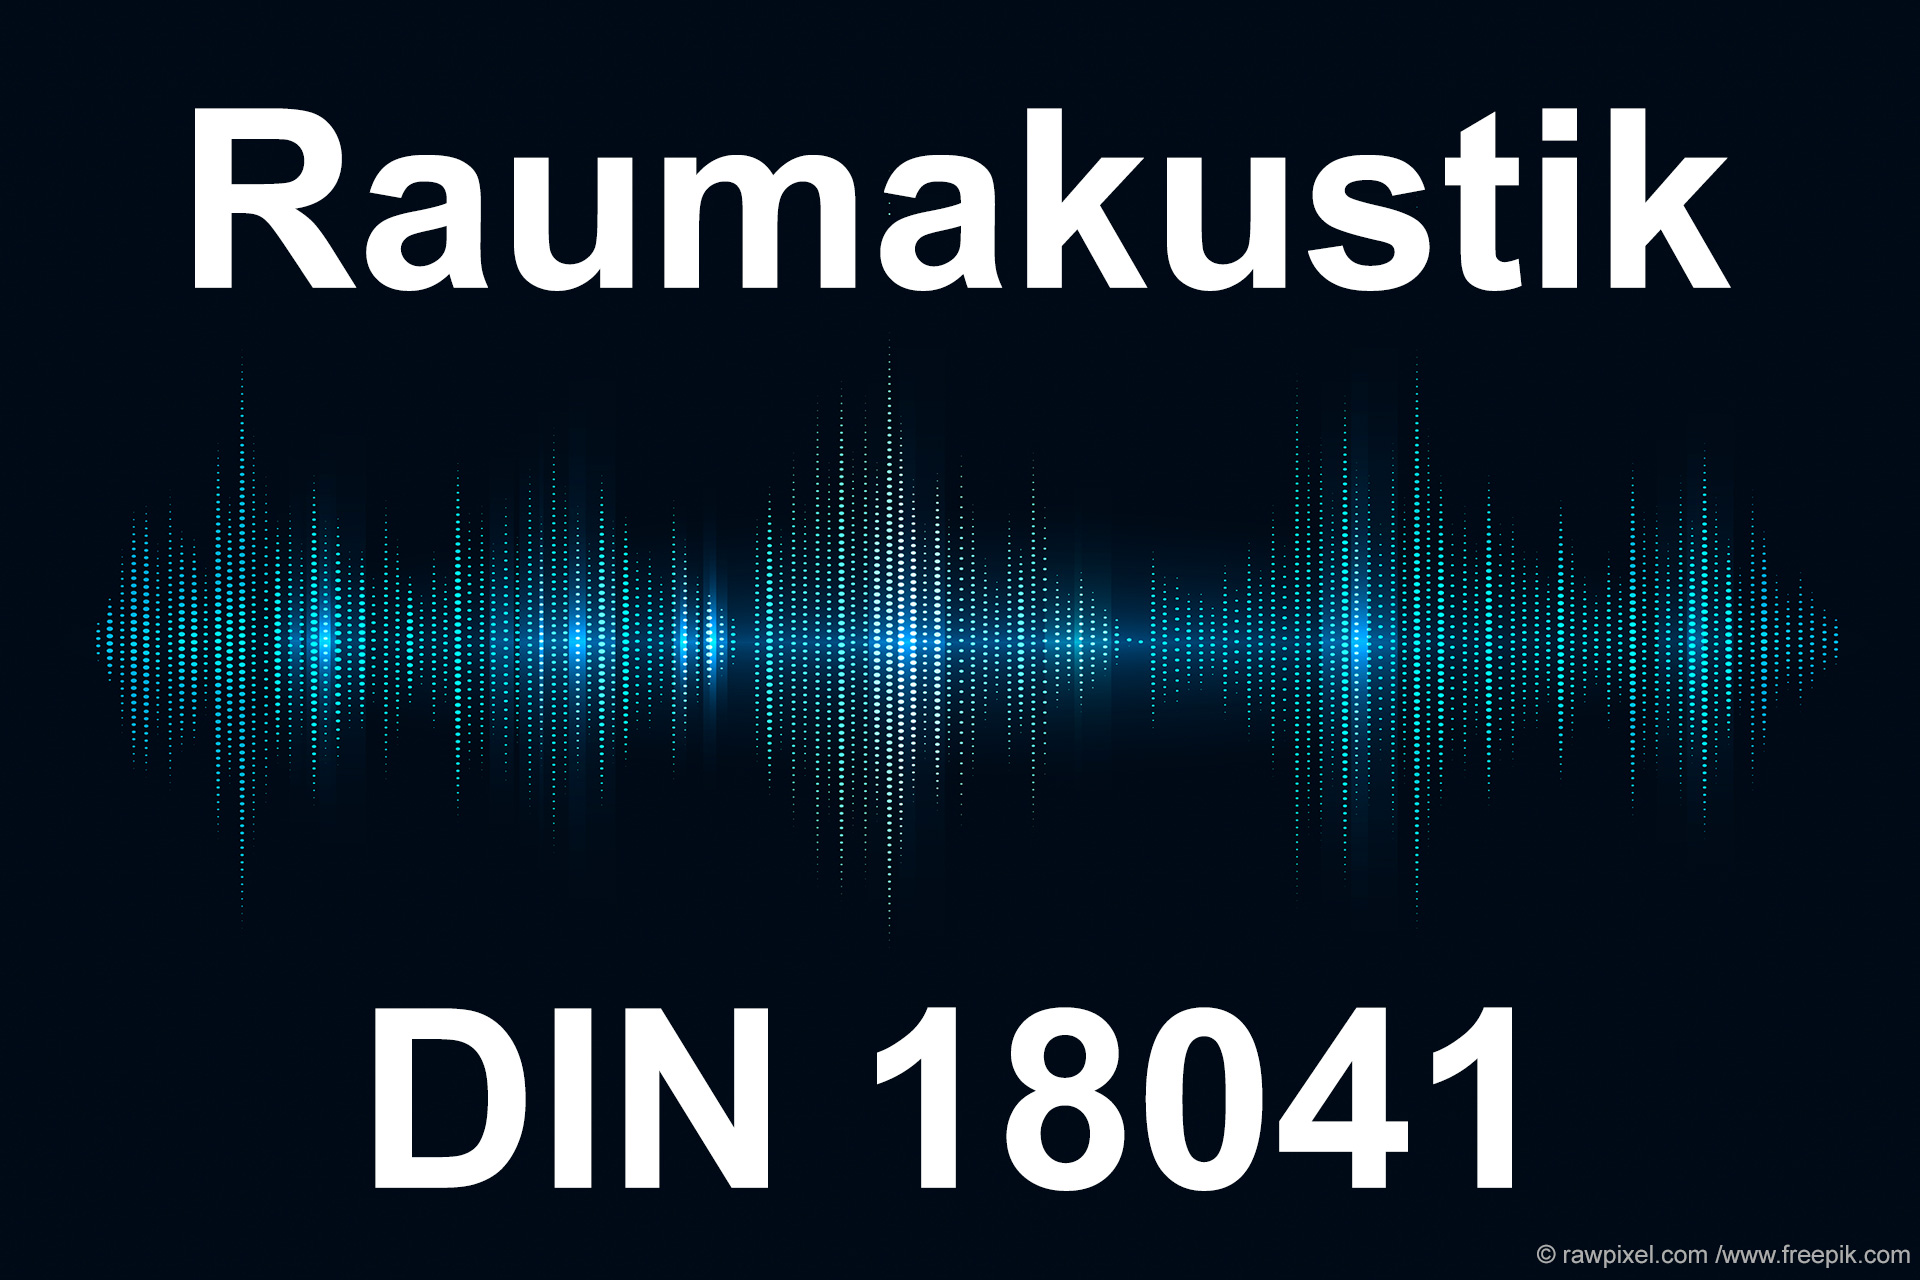  Raumakustik – DIN 18041